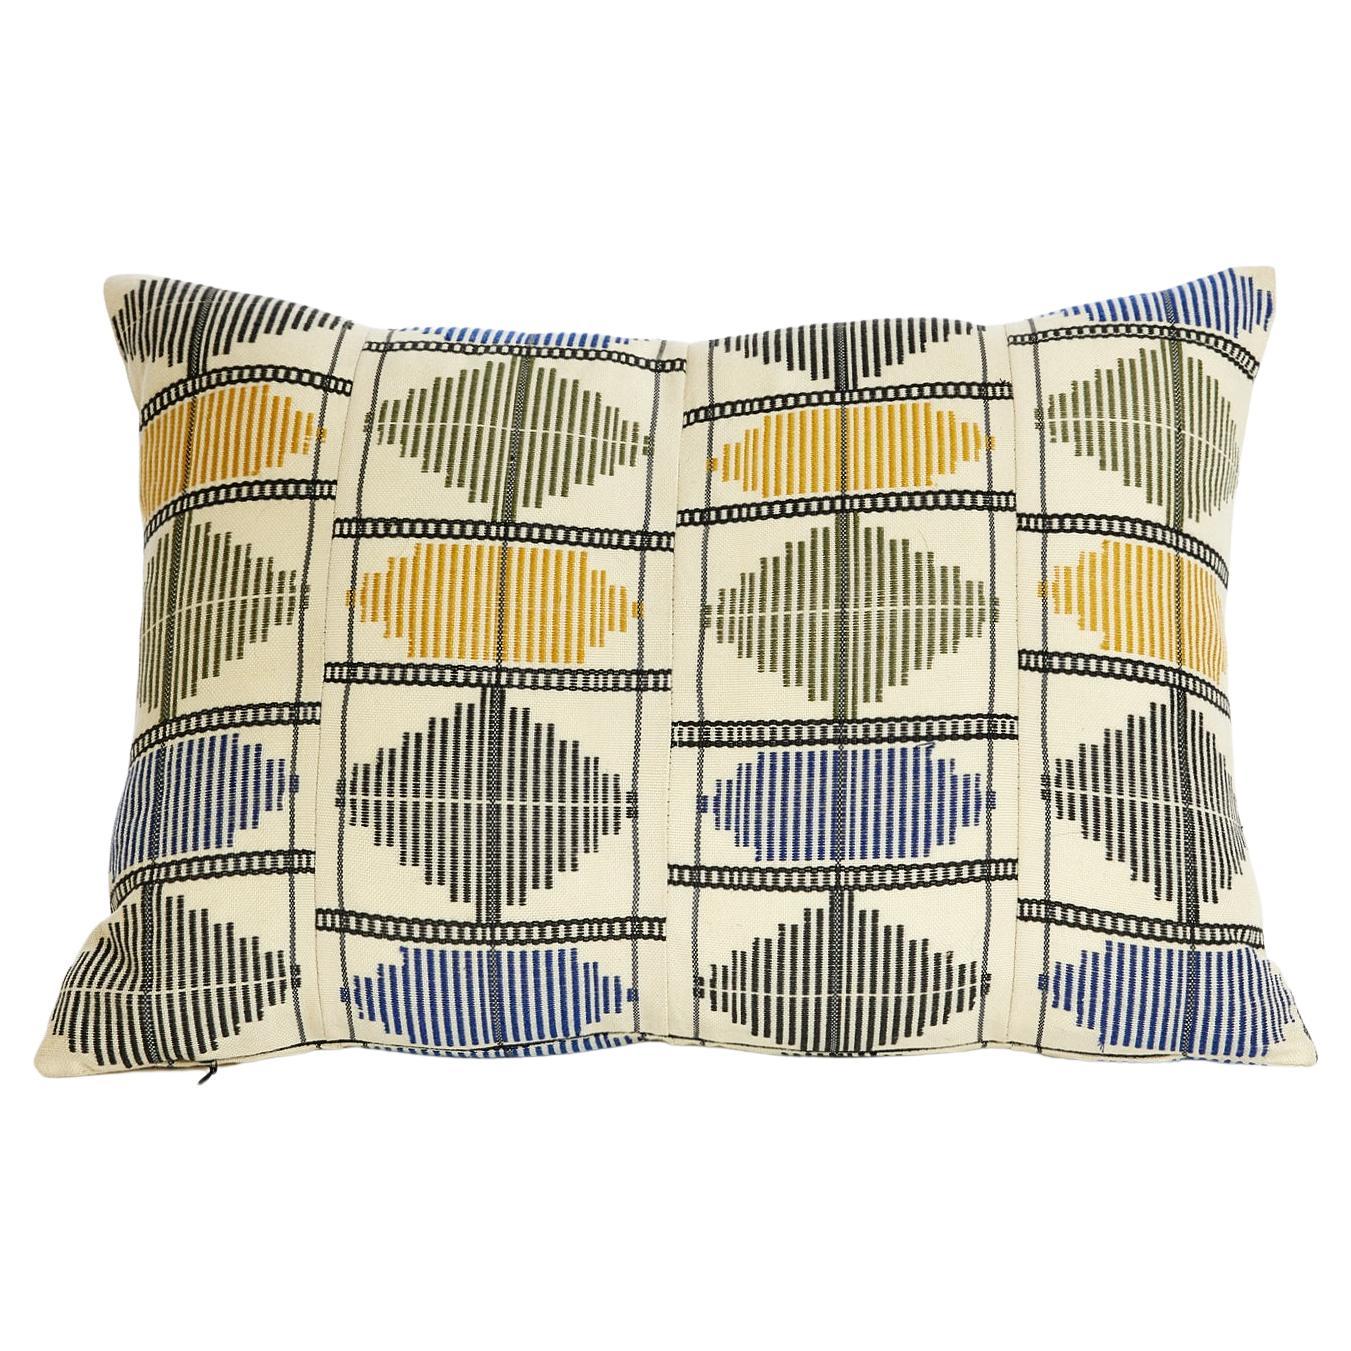 Contemporary Golden Editions Cushion Handwoven Cotton Decorative Kente Indigo